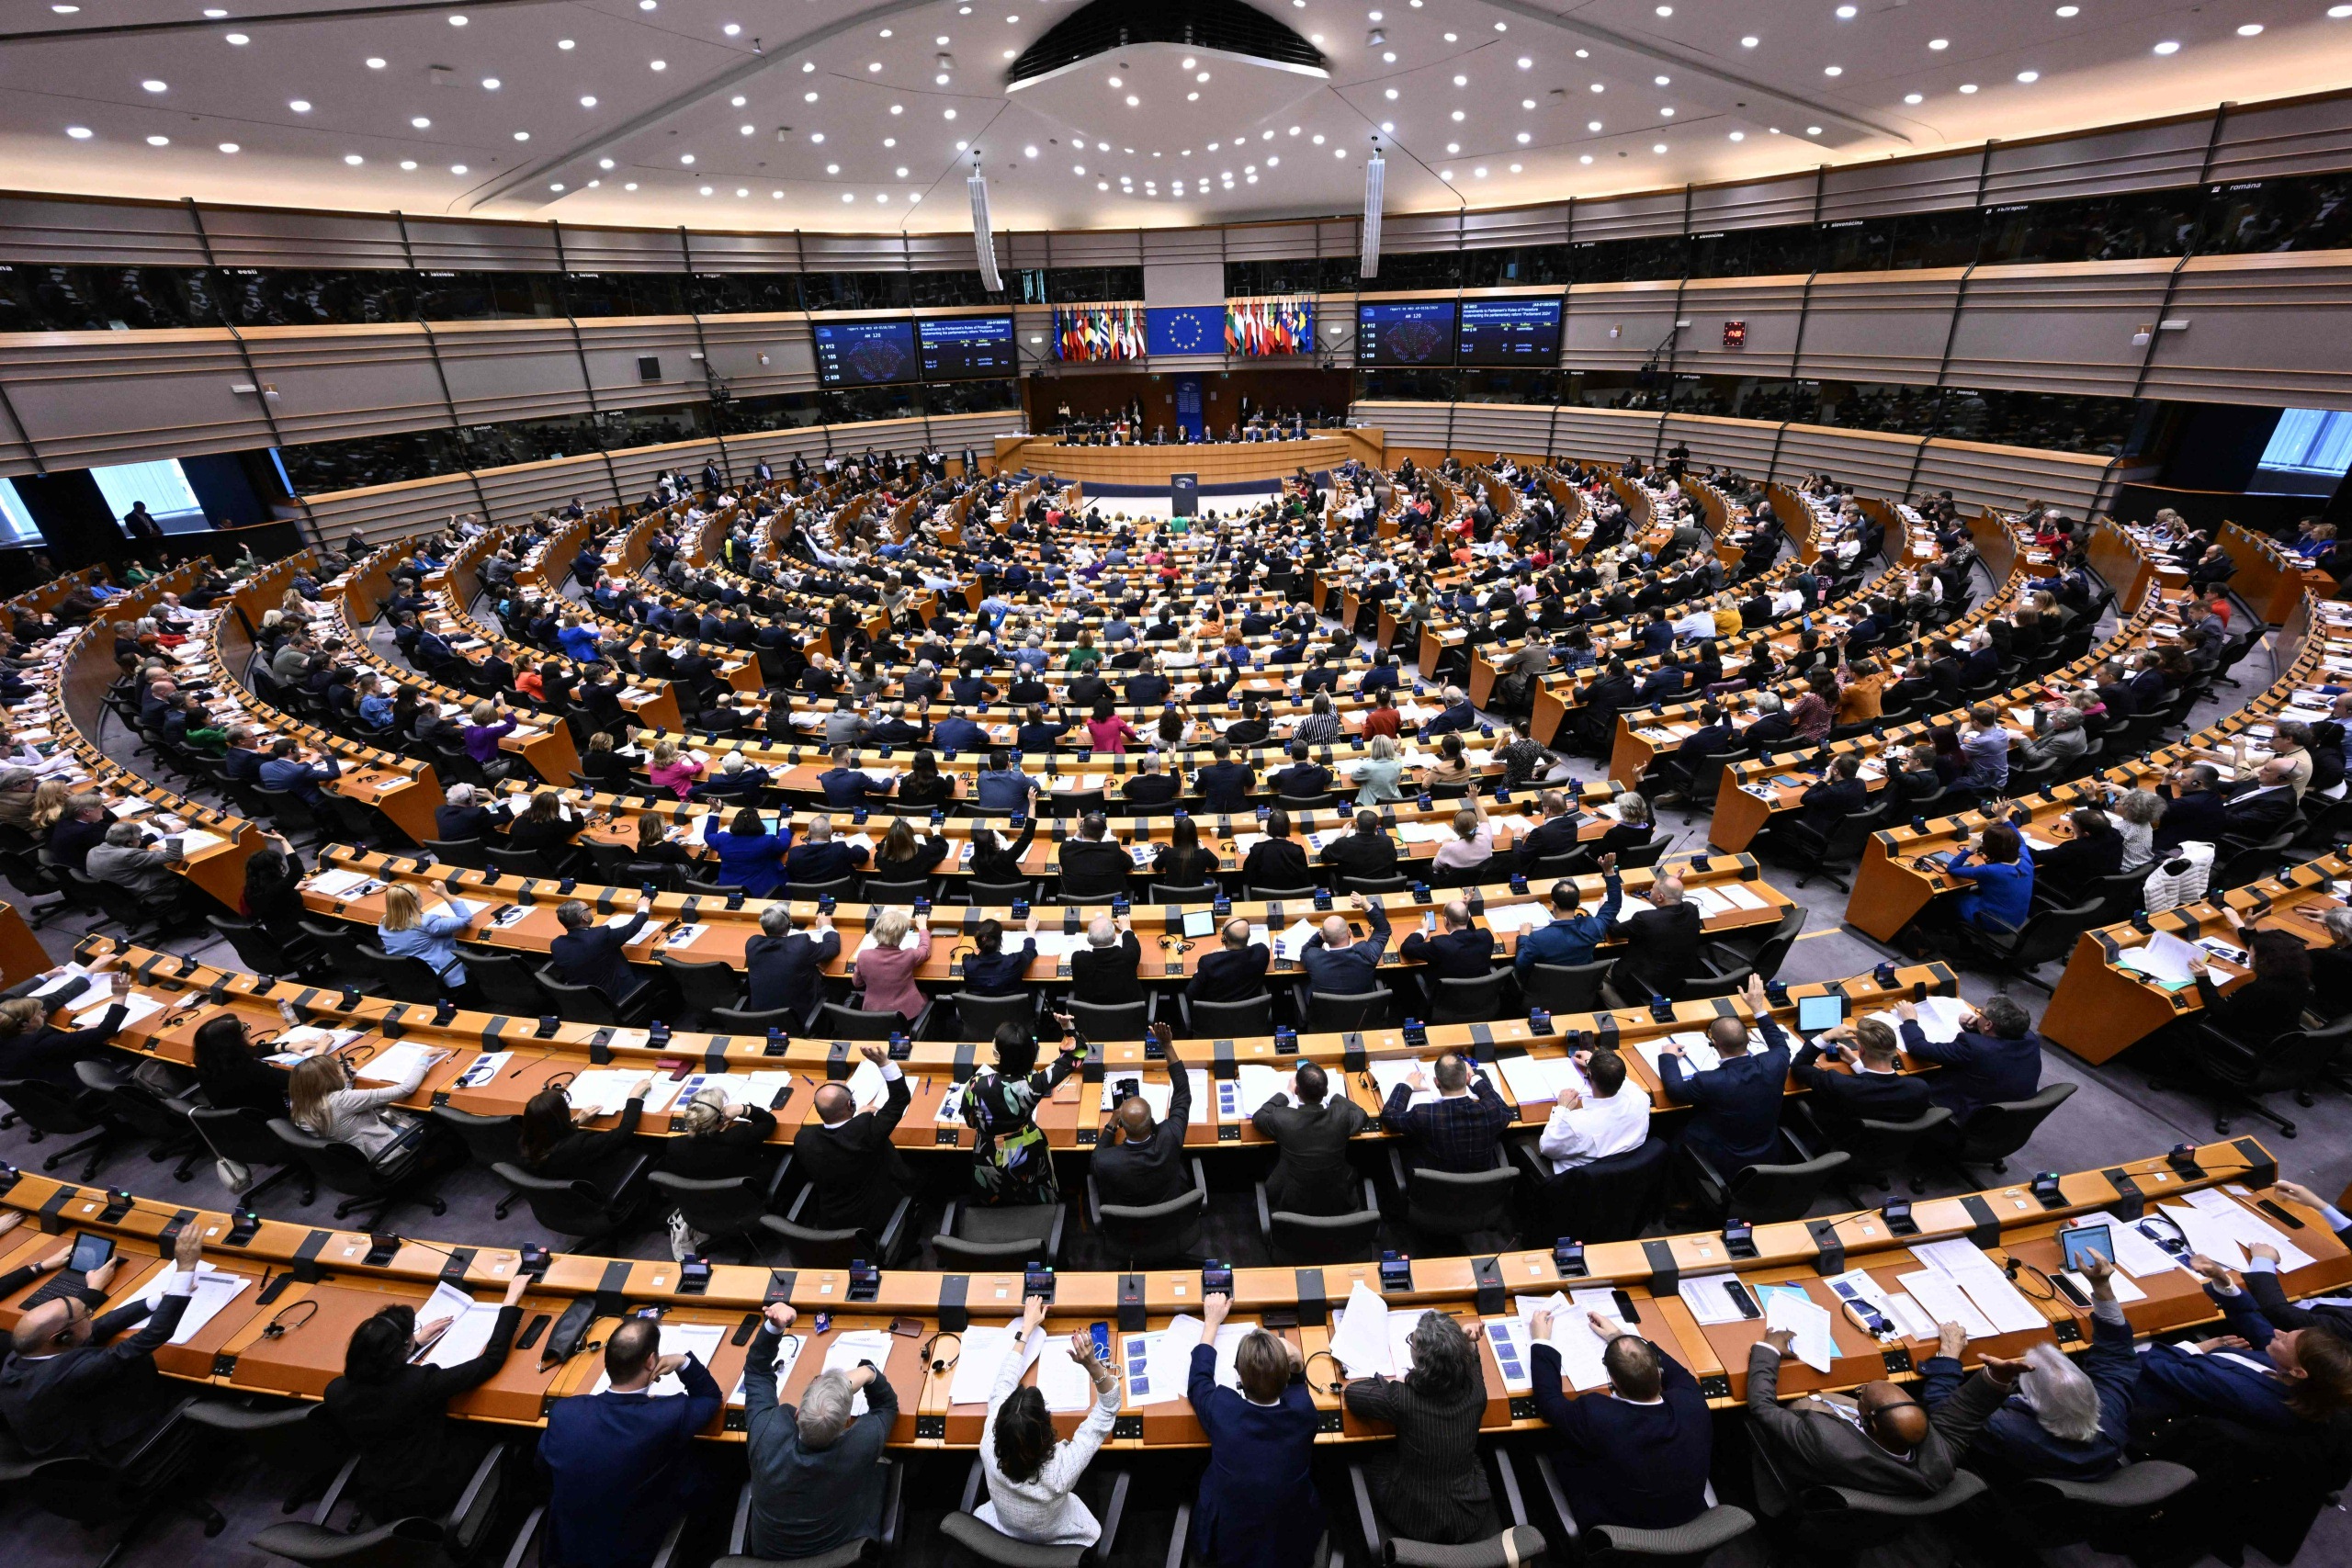 eu-parlamentilta historialliseksi kuvattu päätös: pitkään väännetty maahanmuuttopaketti sai sinetin, jäsenmaille tulossa velvollisuus auttaa muuttopaineesta kärsiviä maita